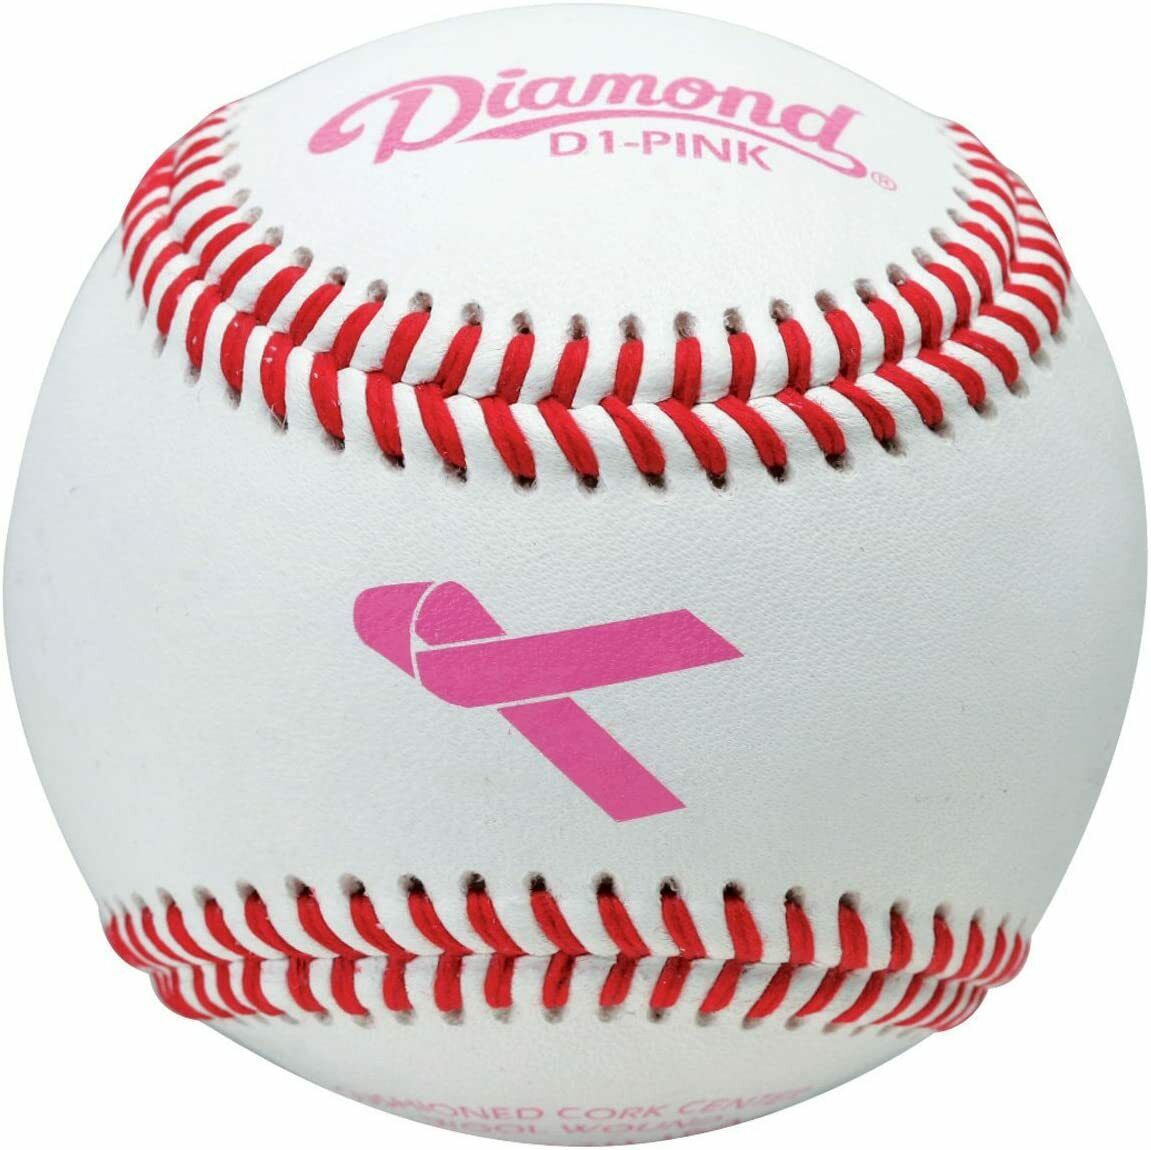 Deportes Diamante | D1-ROSA | Pelotas de béisbol rosadas para eventos temáticos especiales | 1 docena de bolas 